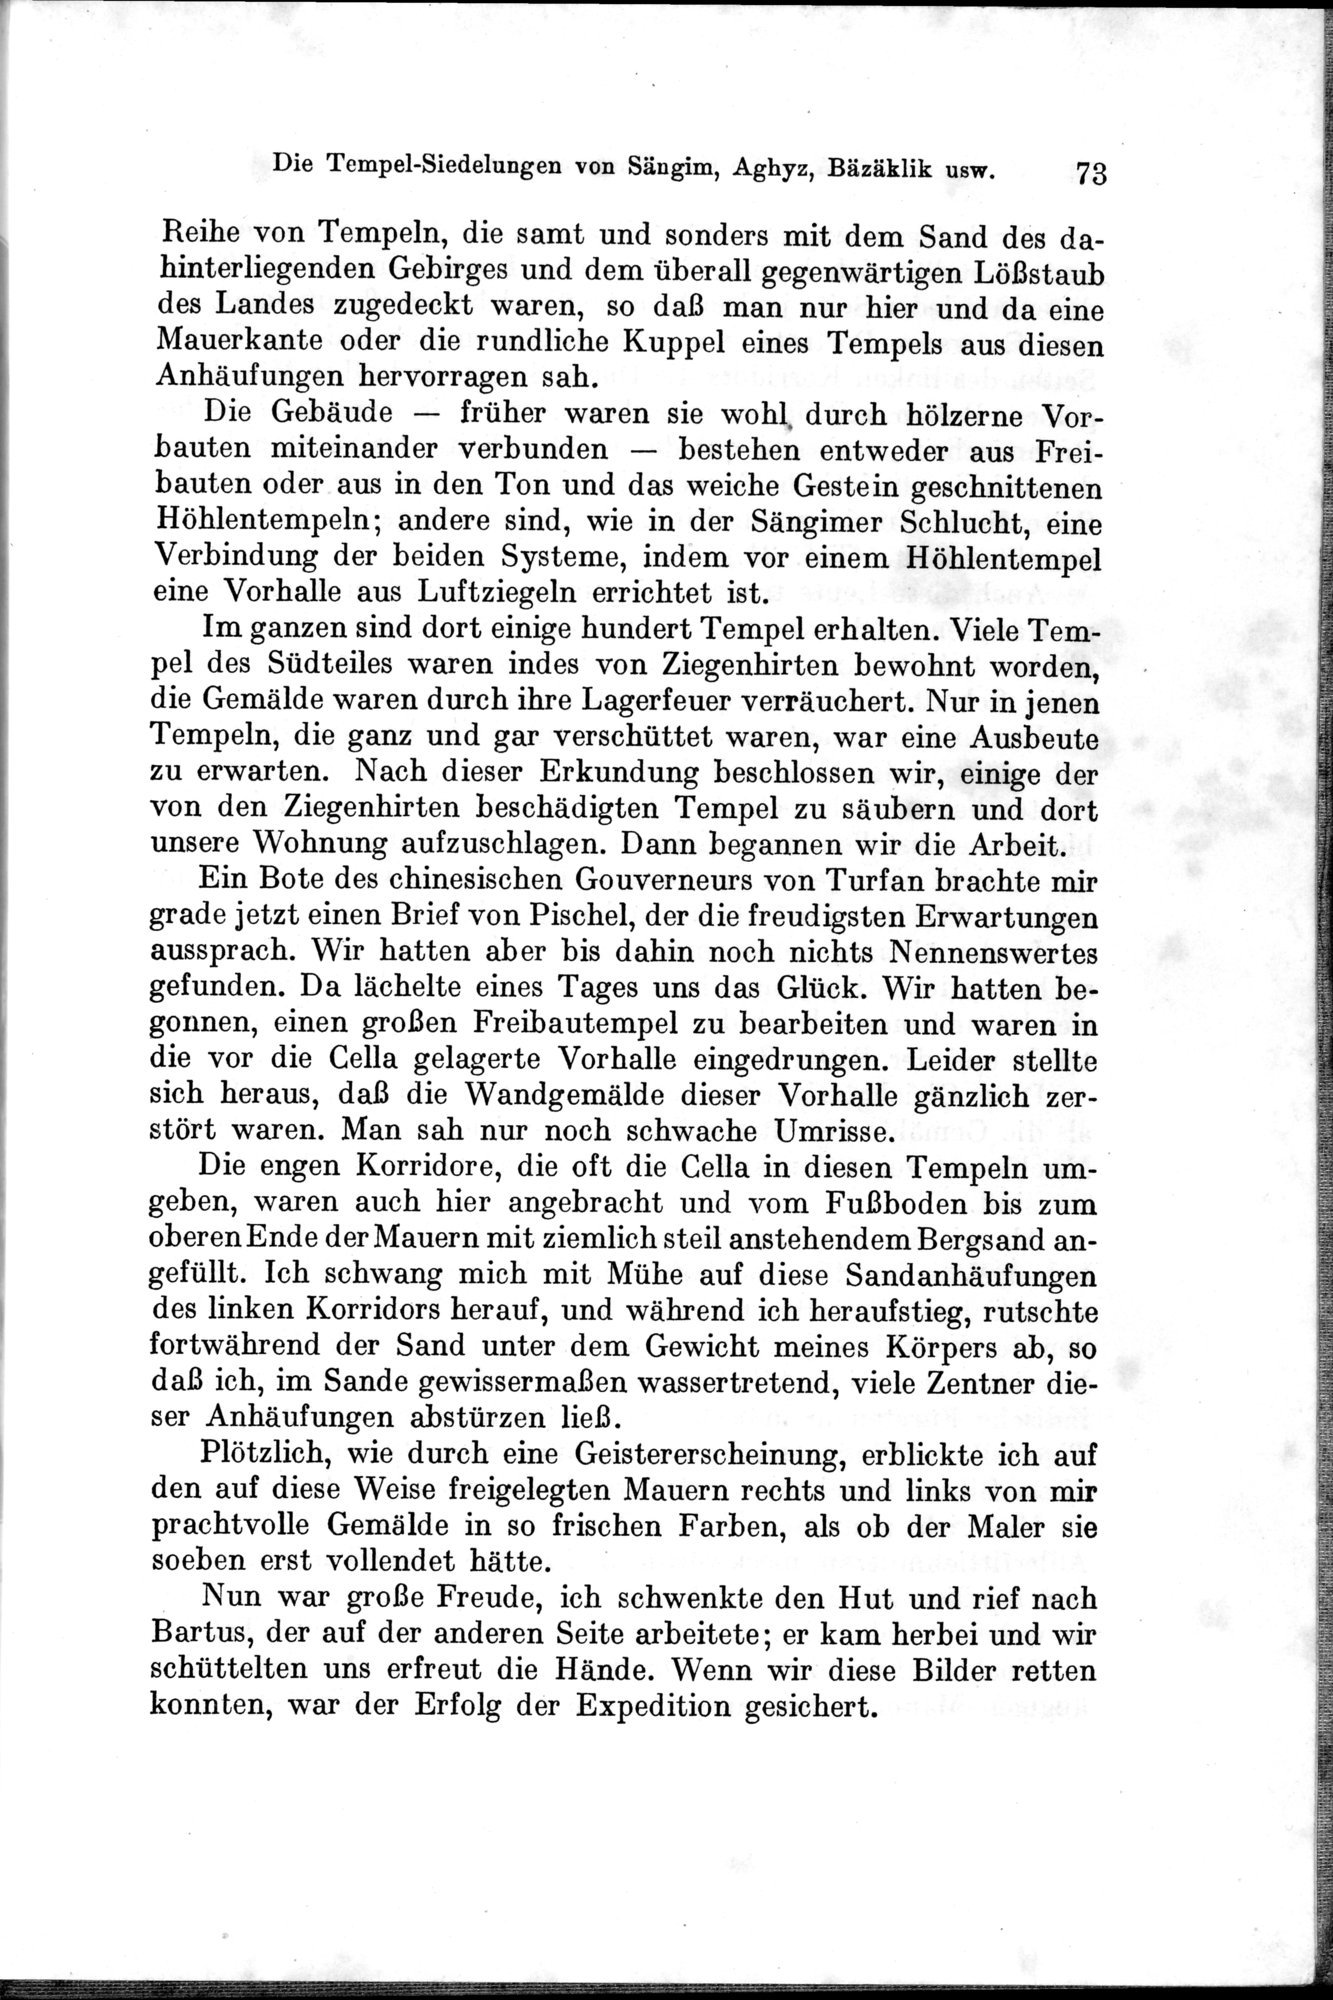 Auf Hellas Spuren in Ostturkistan : vol.1 / Page 111 (Grayscale High Resolution Image)